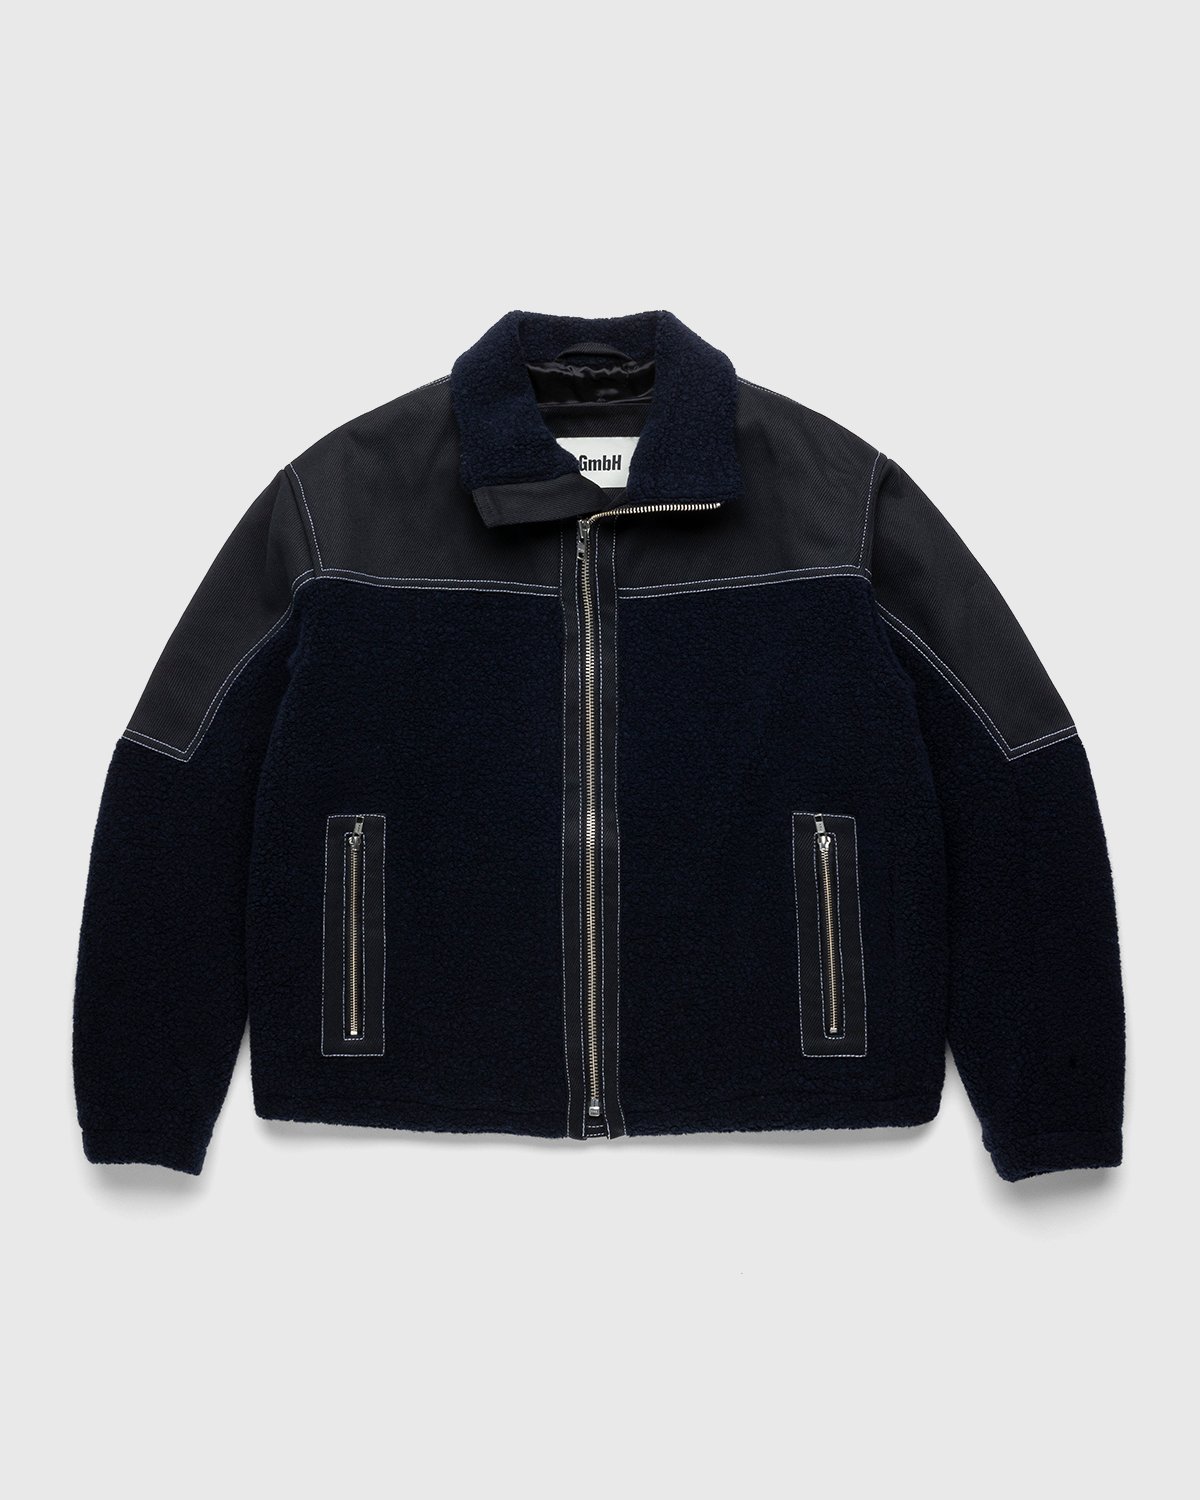 GmbH - Janan Jacket Black/Navy - Clothing - Blue - Image 1